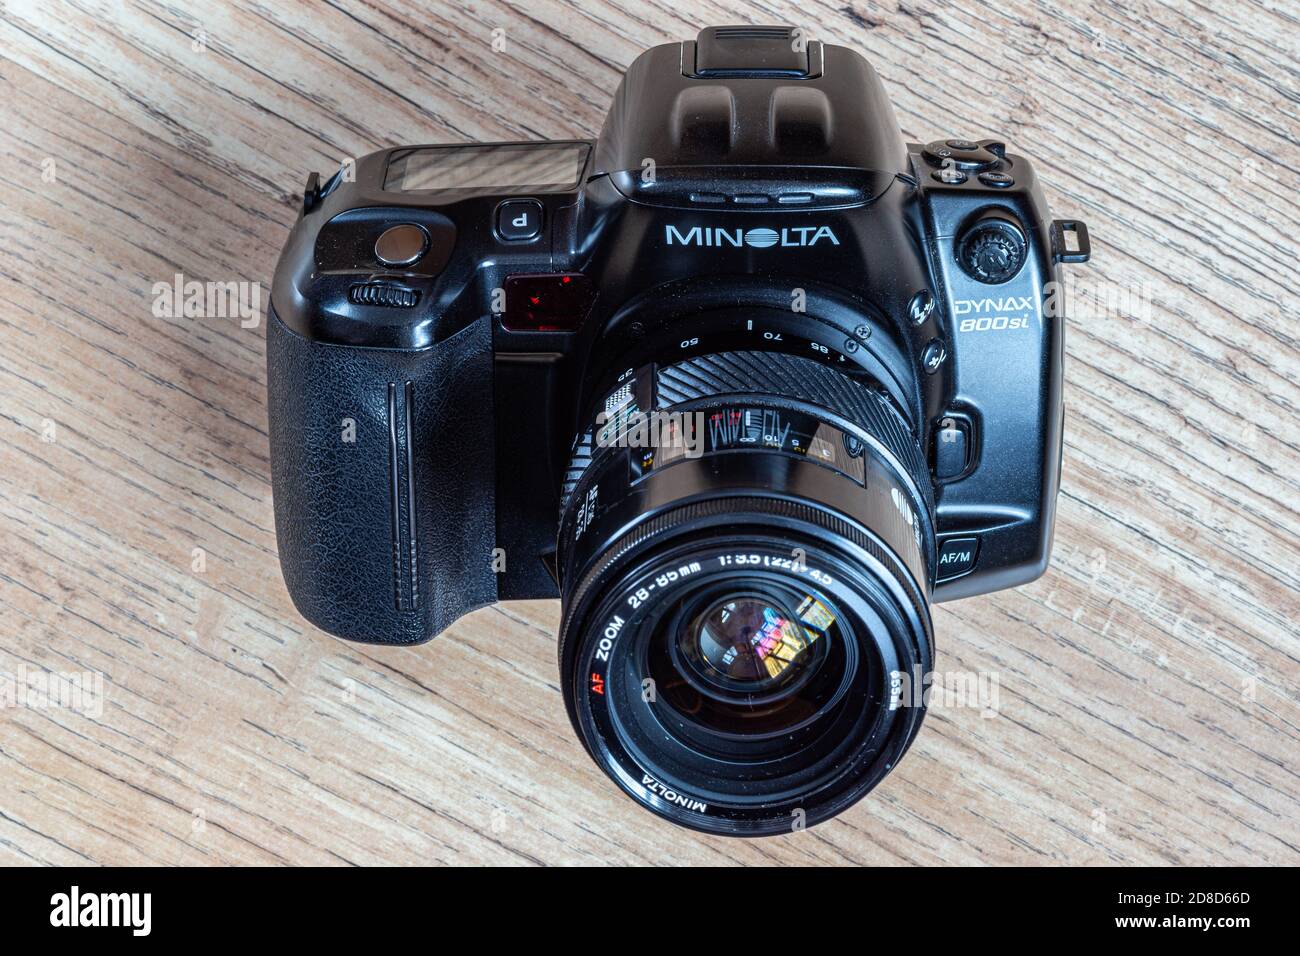 Minolta Classic fotocamera reflex autofocus dagli anni '80 al anni '90 Foto  stock - Alamy